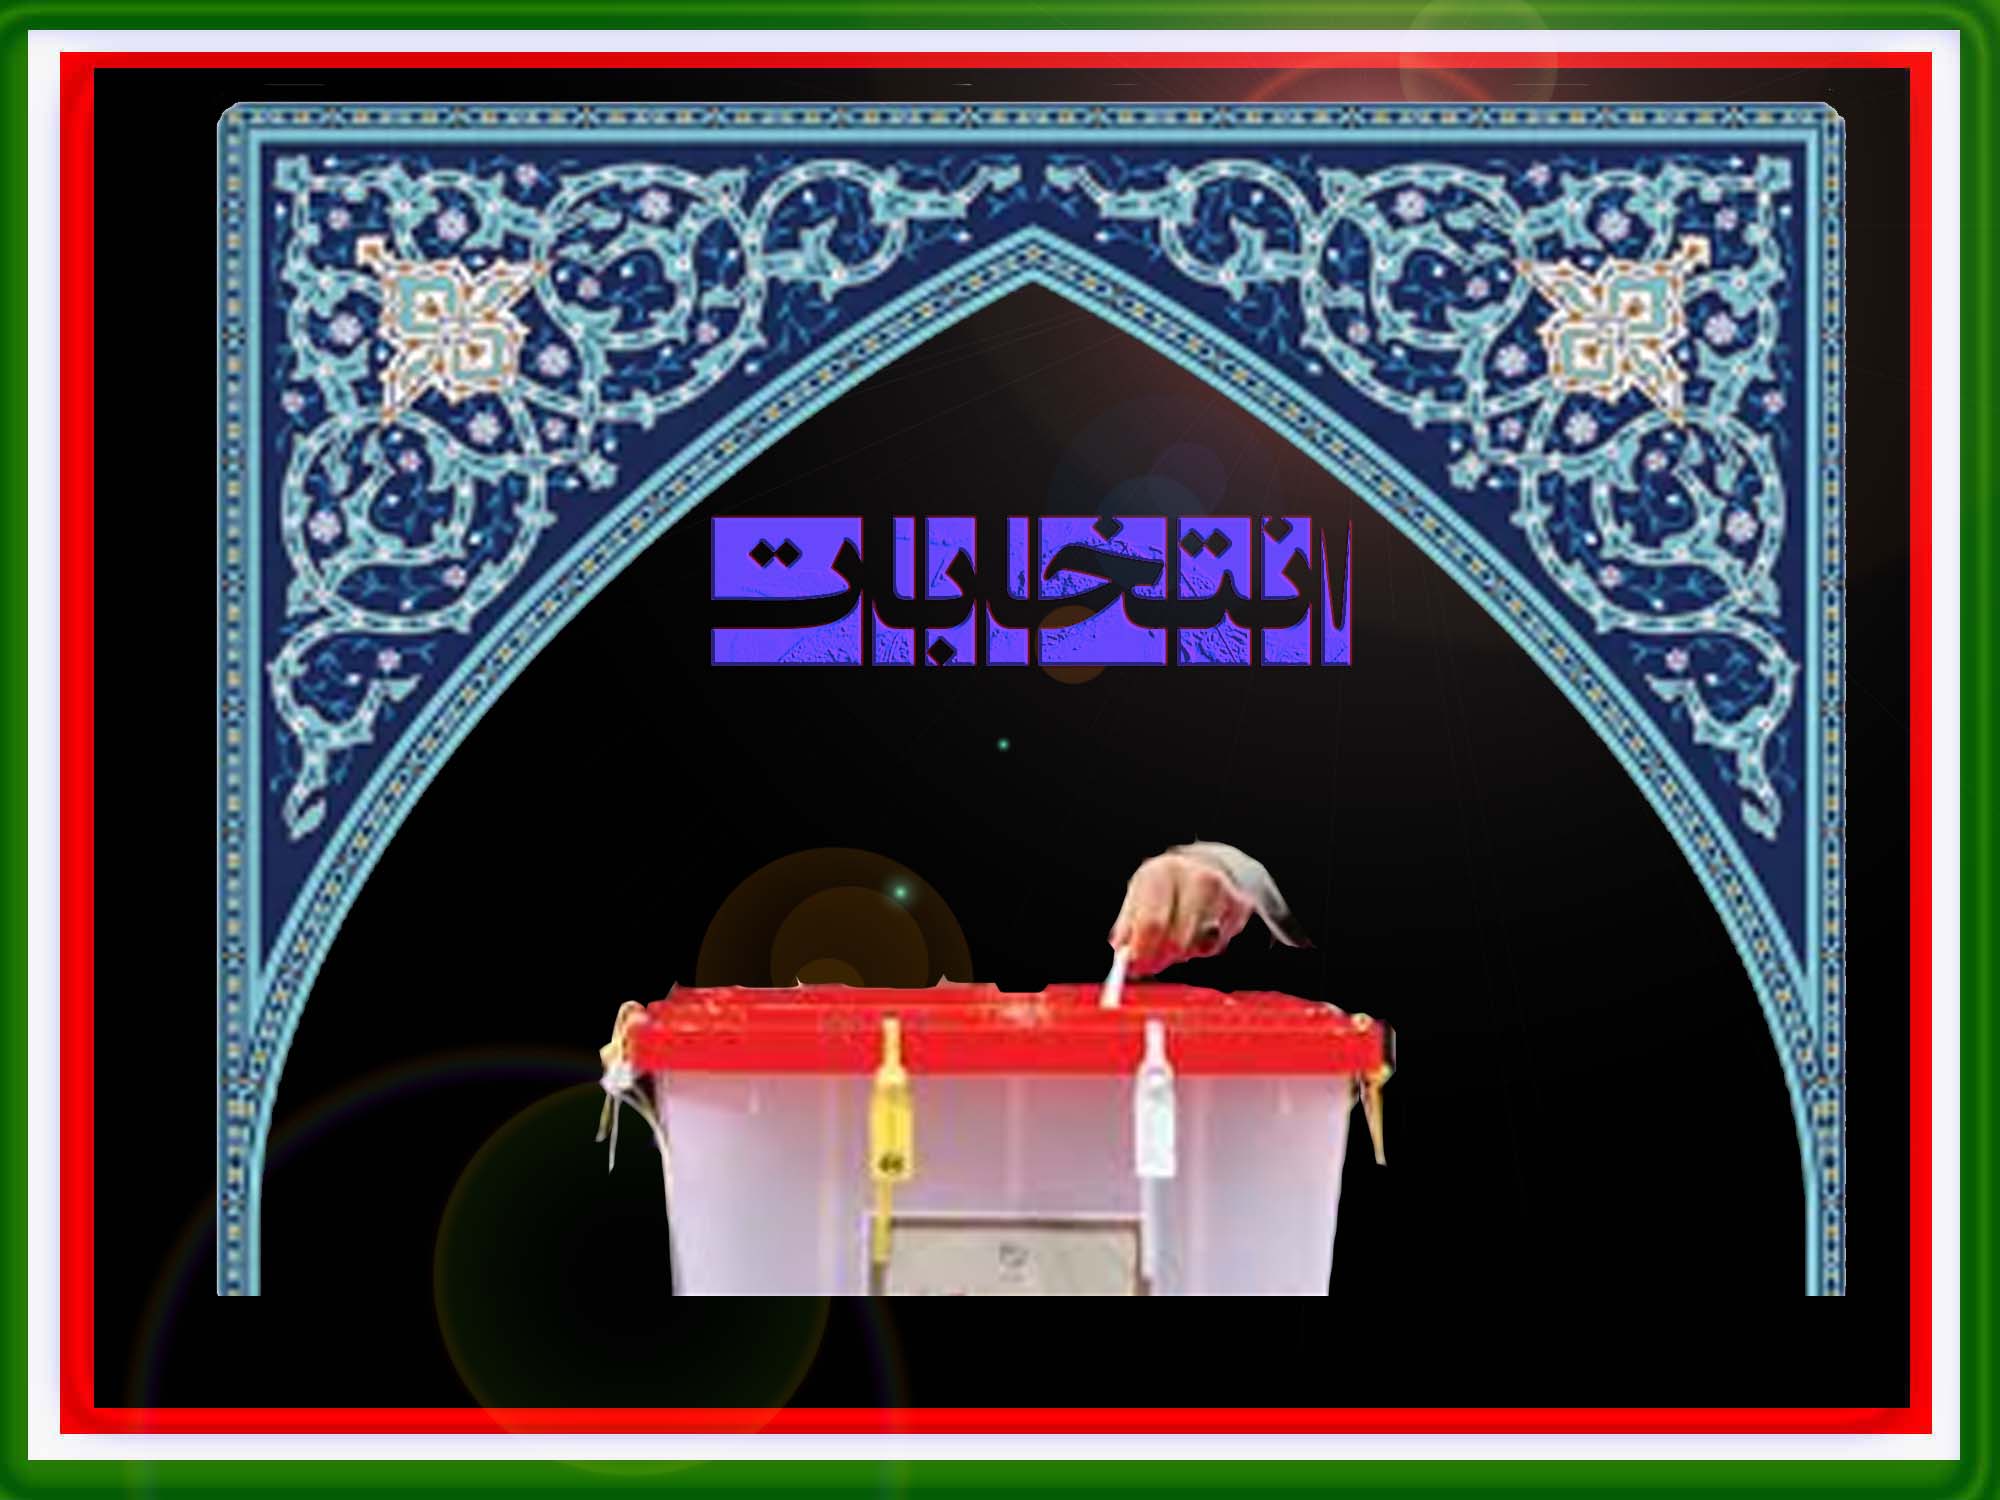 انقلاب اسلامی ایران، نامزدهای انتخابات را برآن می دارد در طول مبارزات انتخاباتی با رعایت ضوابط و مقررات و اخلاق اسلامی؛ بجای تخریب به بیان نقاط قوت خود پرداخته و به دنبال جلب نظر مردم و کسب آرای اکثریت باشند. این یادداشت به چگونگی این رویه می پردازد.